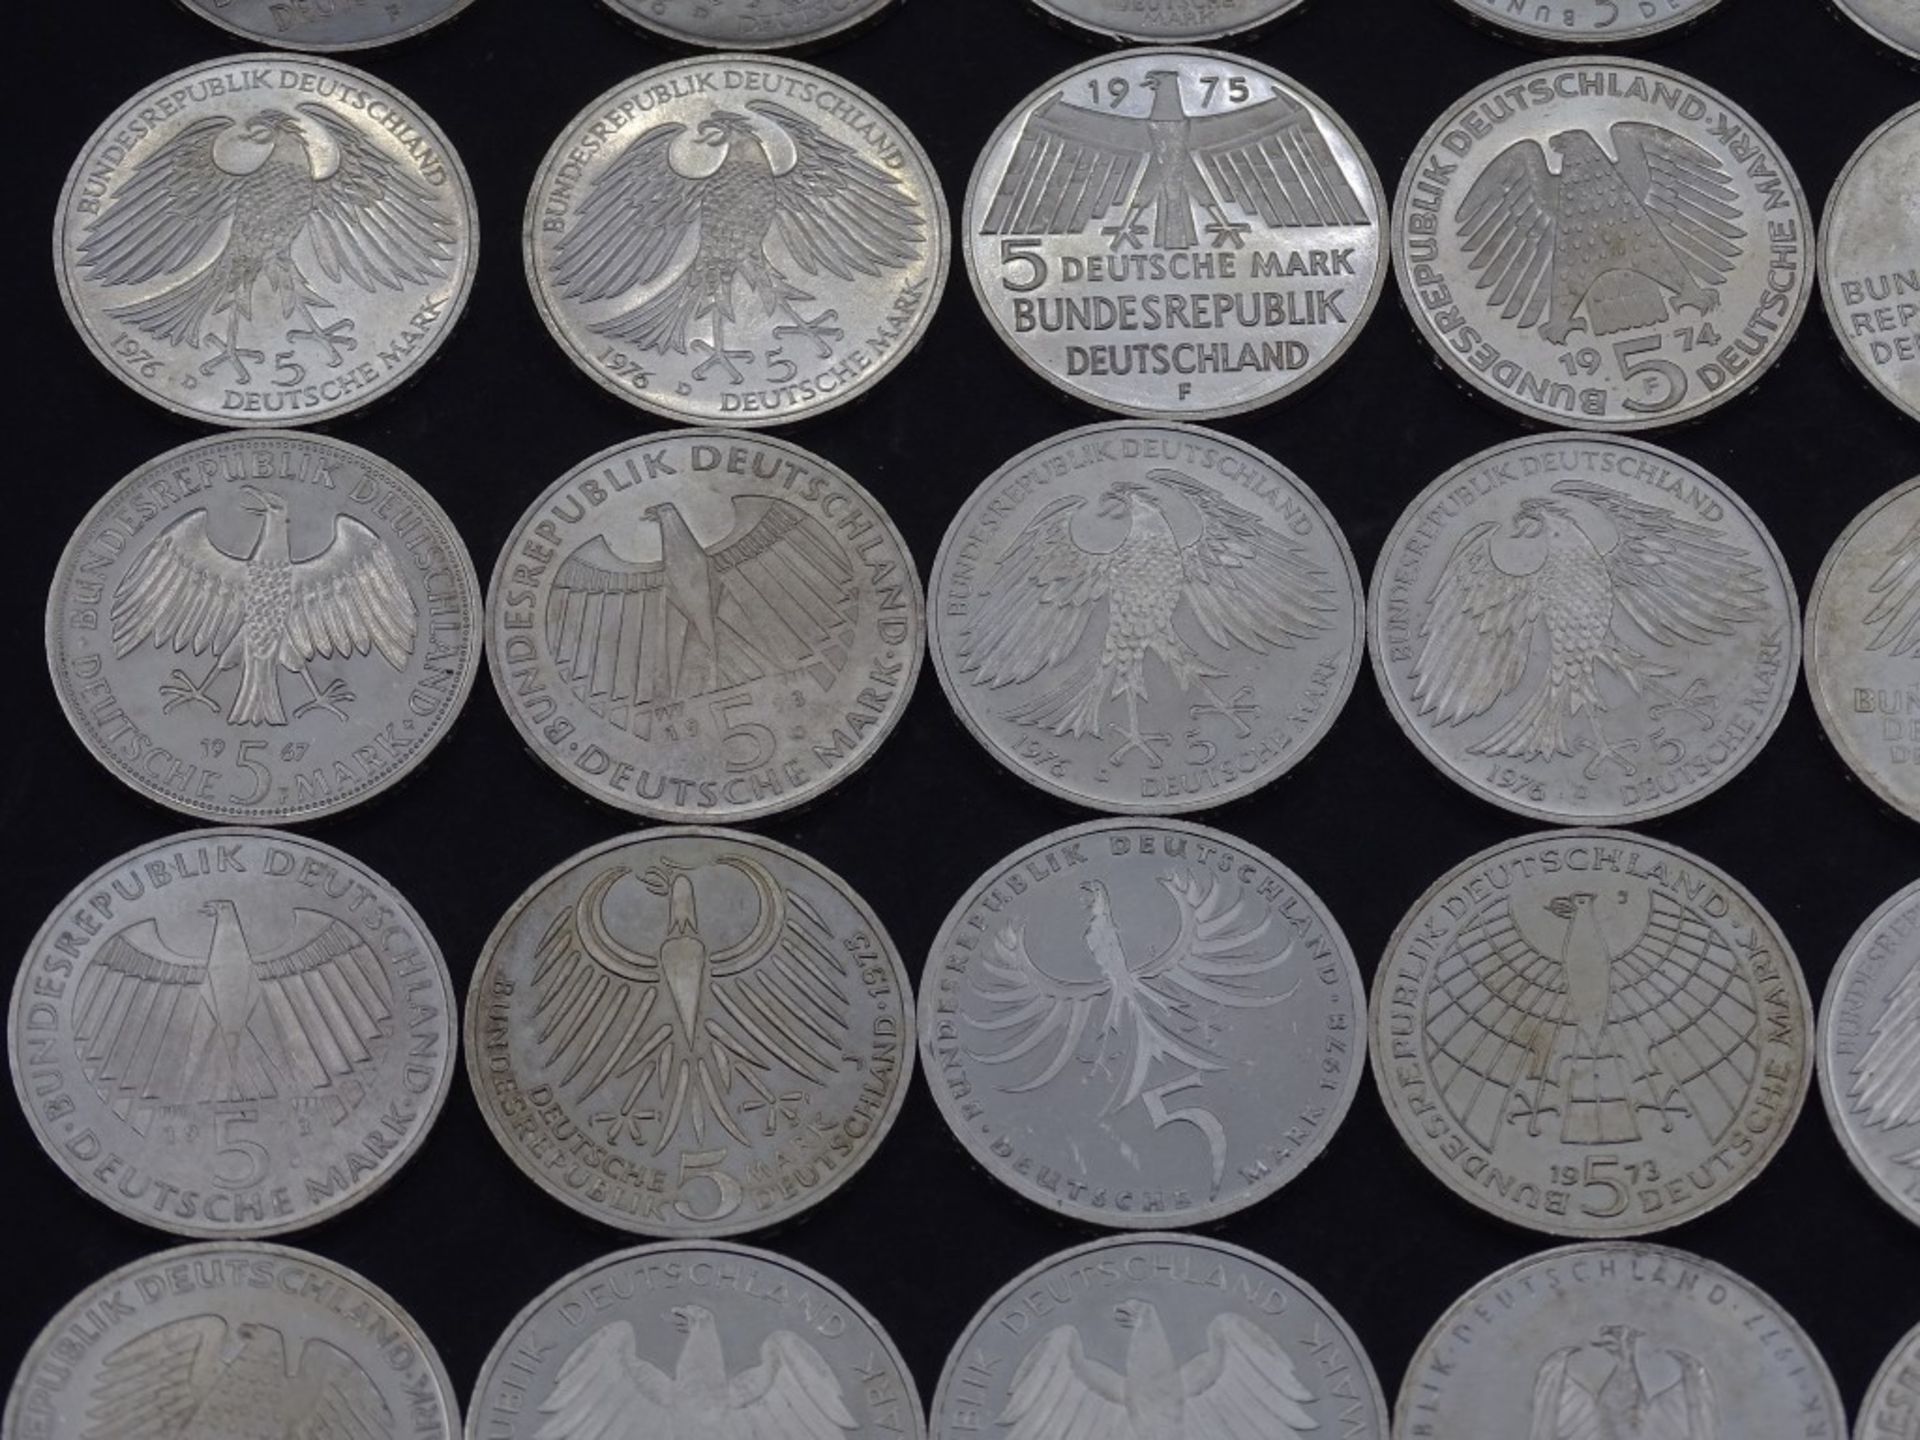 40x 5 DM Münzen,Silber,ges. 200 Deutsche Mar - Bild 3 aus 10